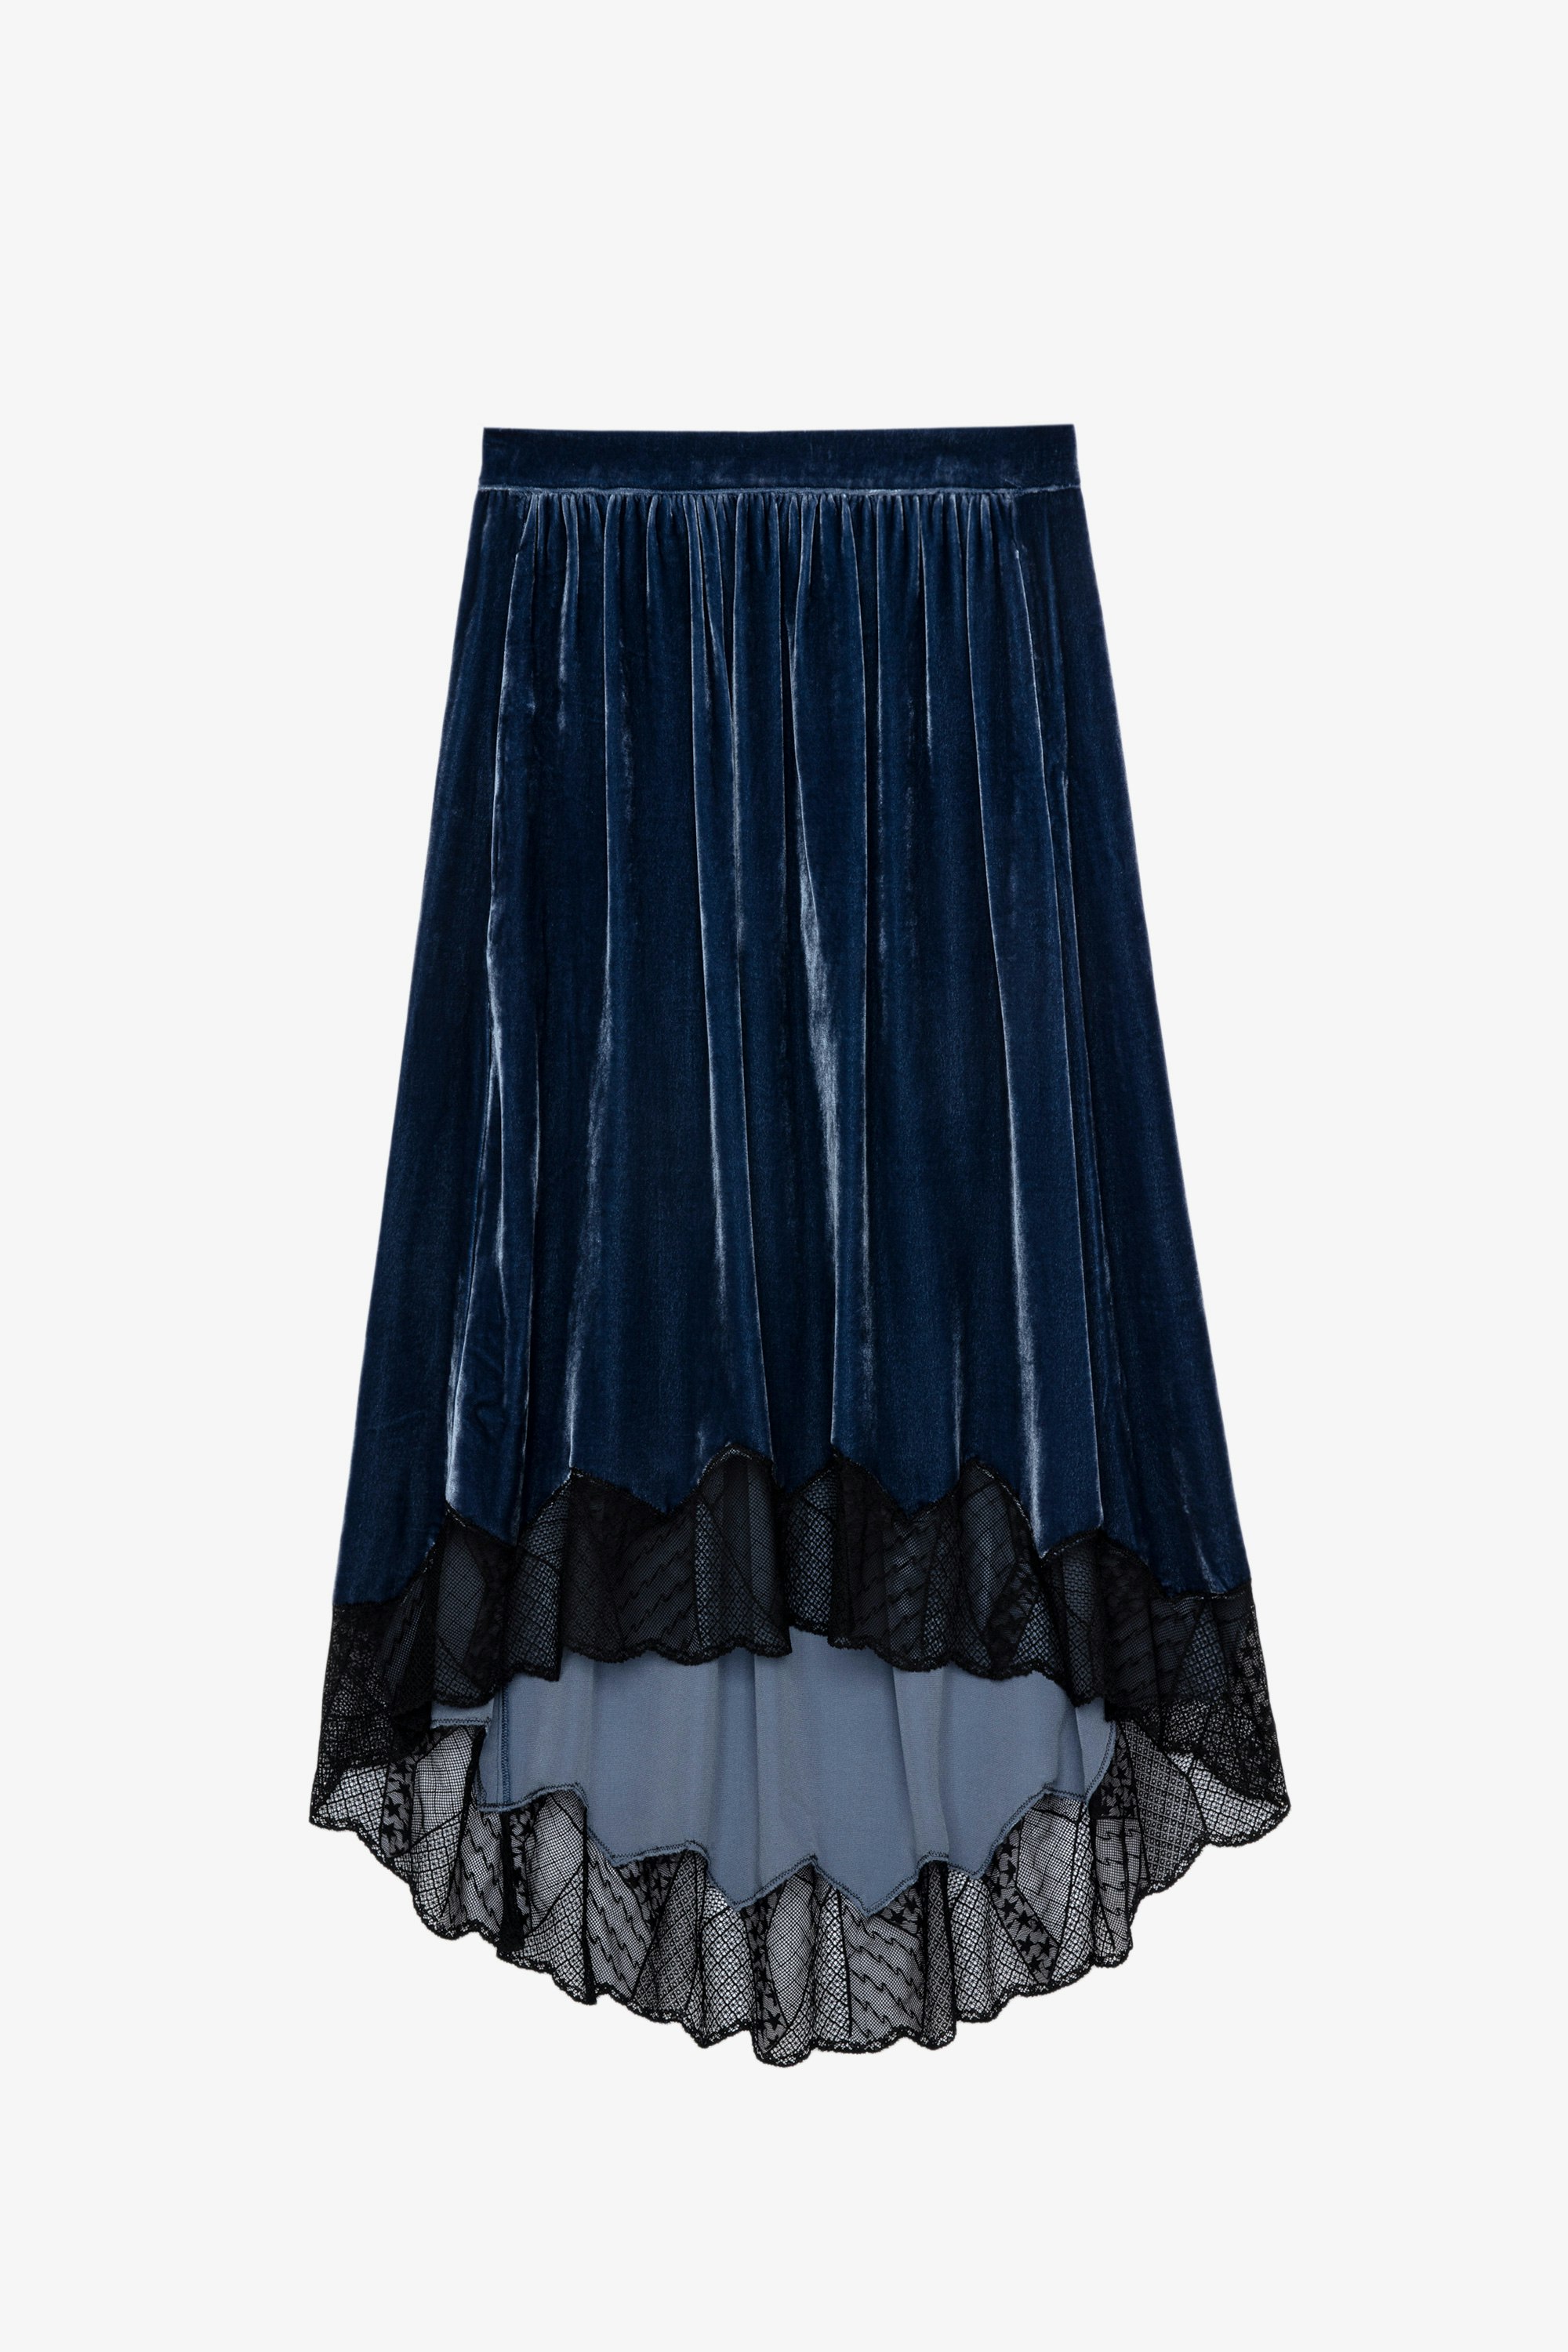 Joslin スカート Women’s blue velvet skirt with lace trim 